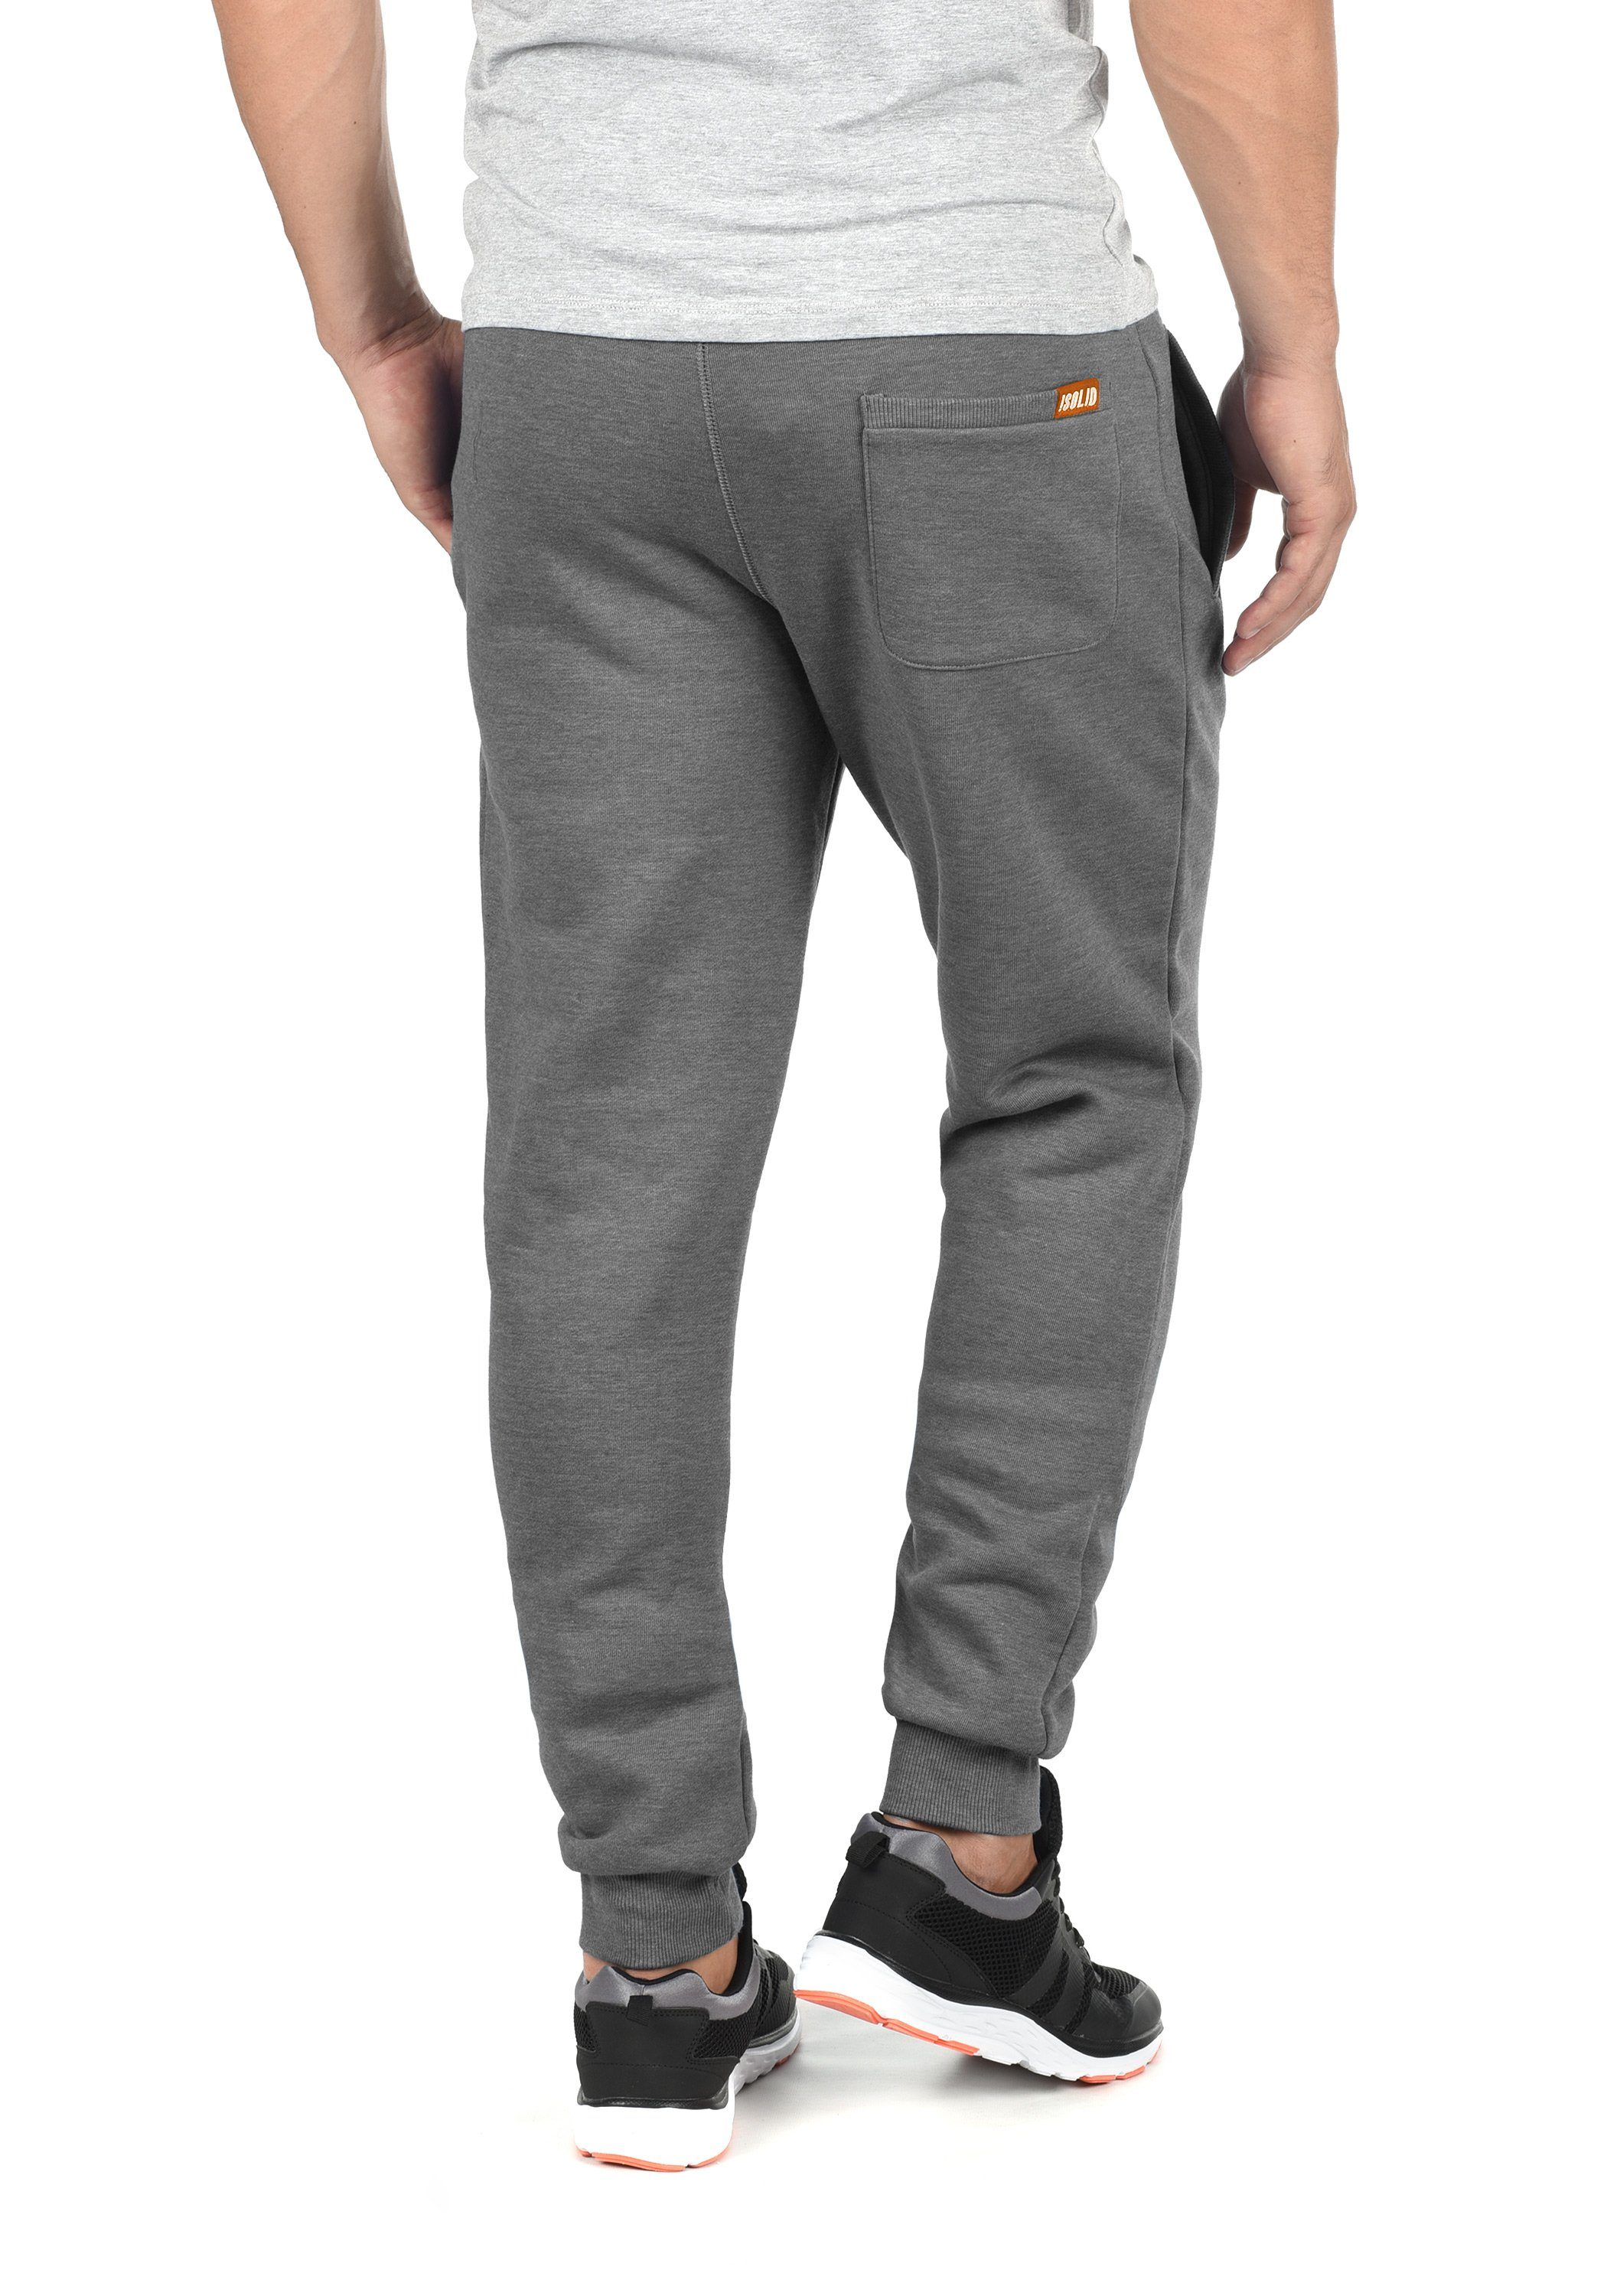 Solid Jogginghose SDBenn Pant lange kontrastfarbenenen mit Hose Details Melange Grey (8236)